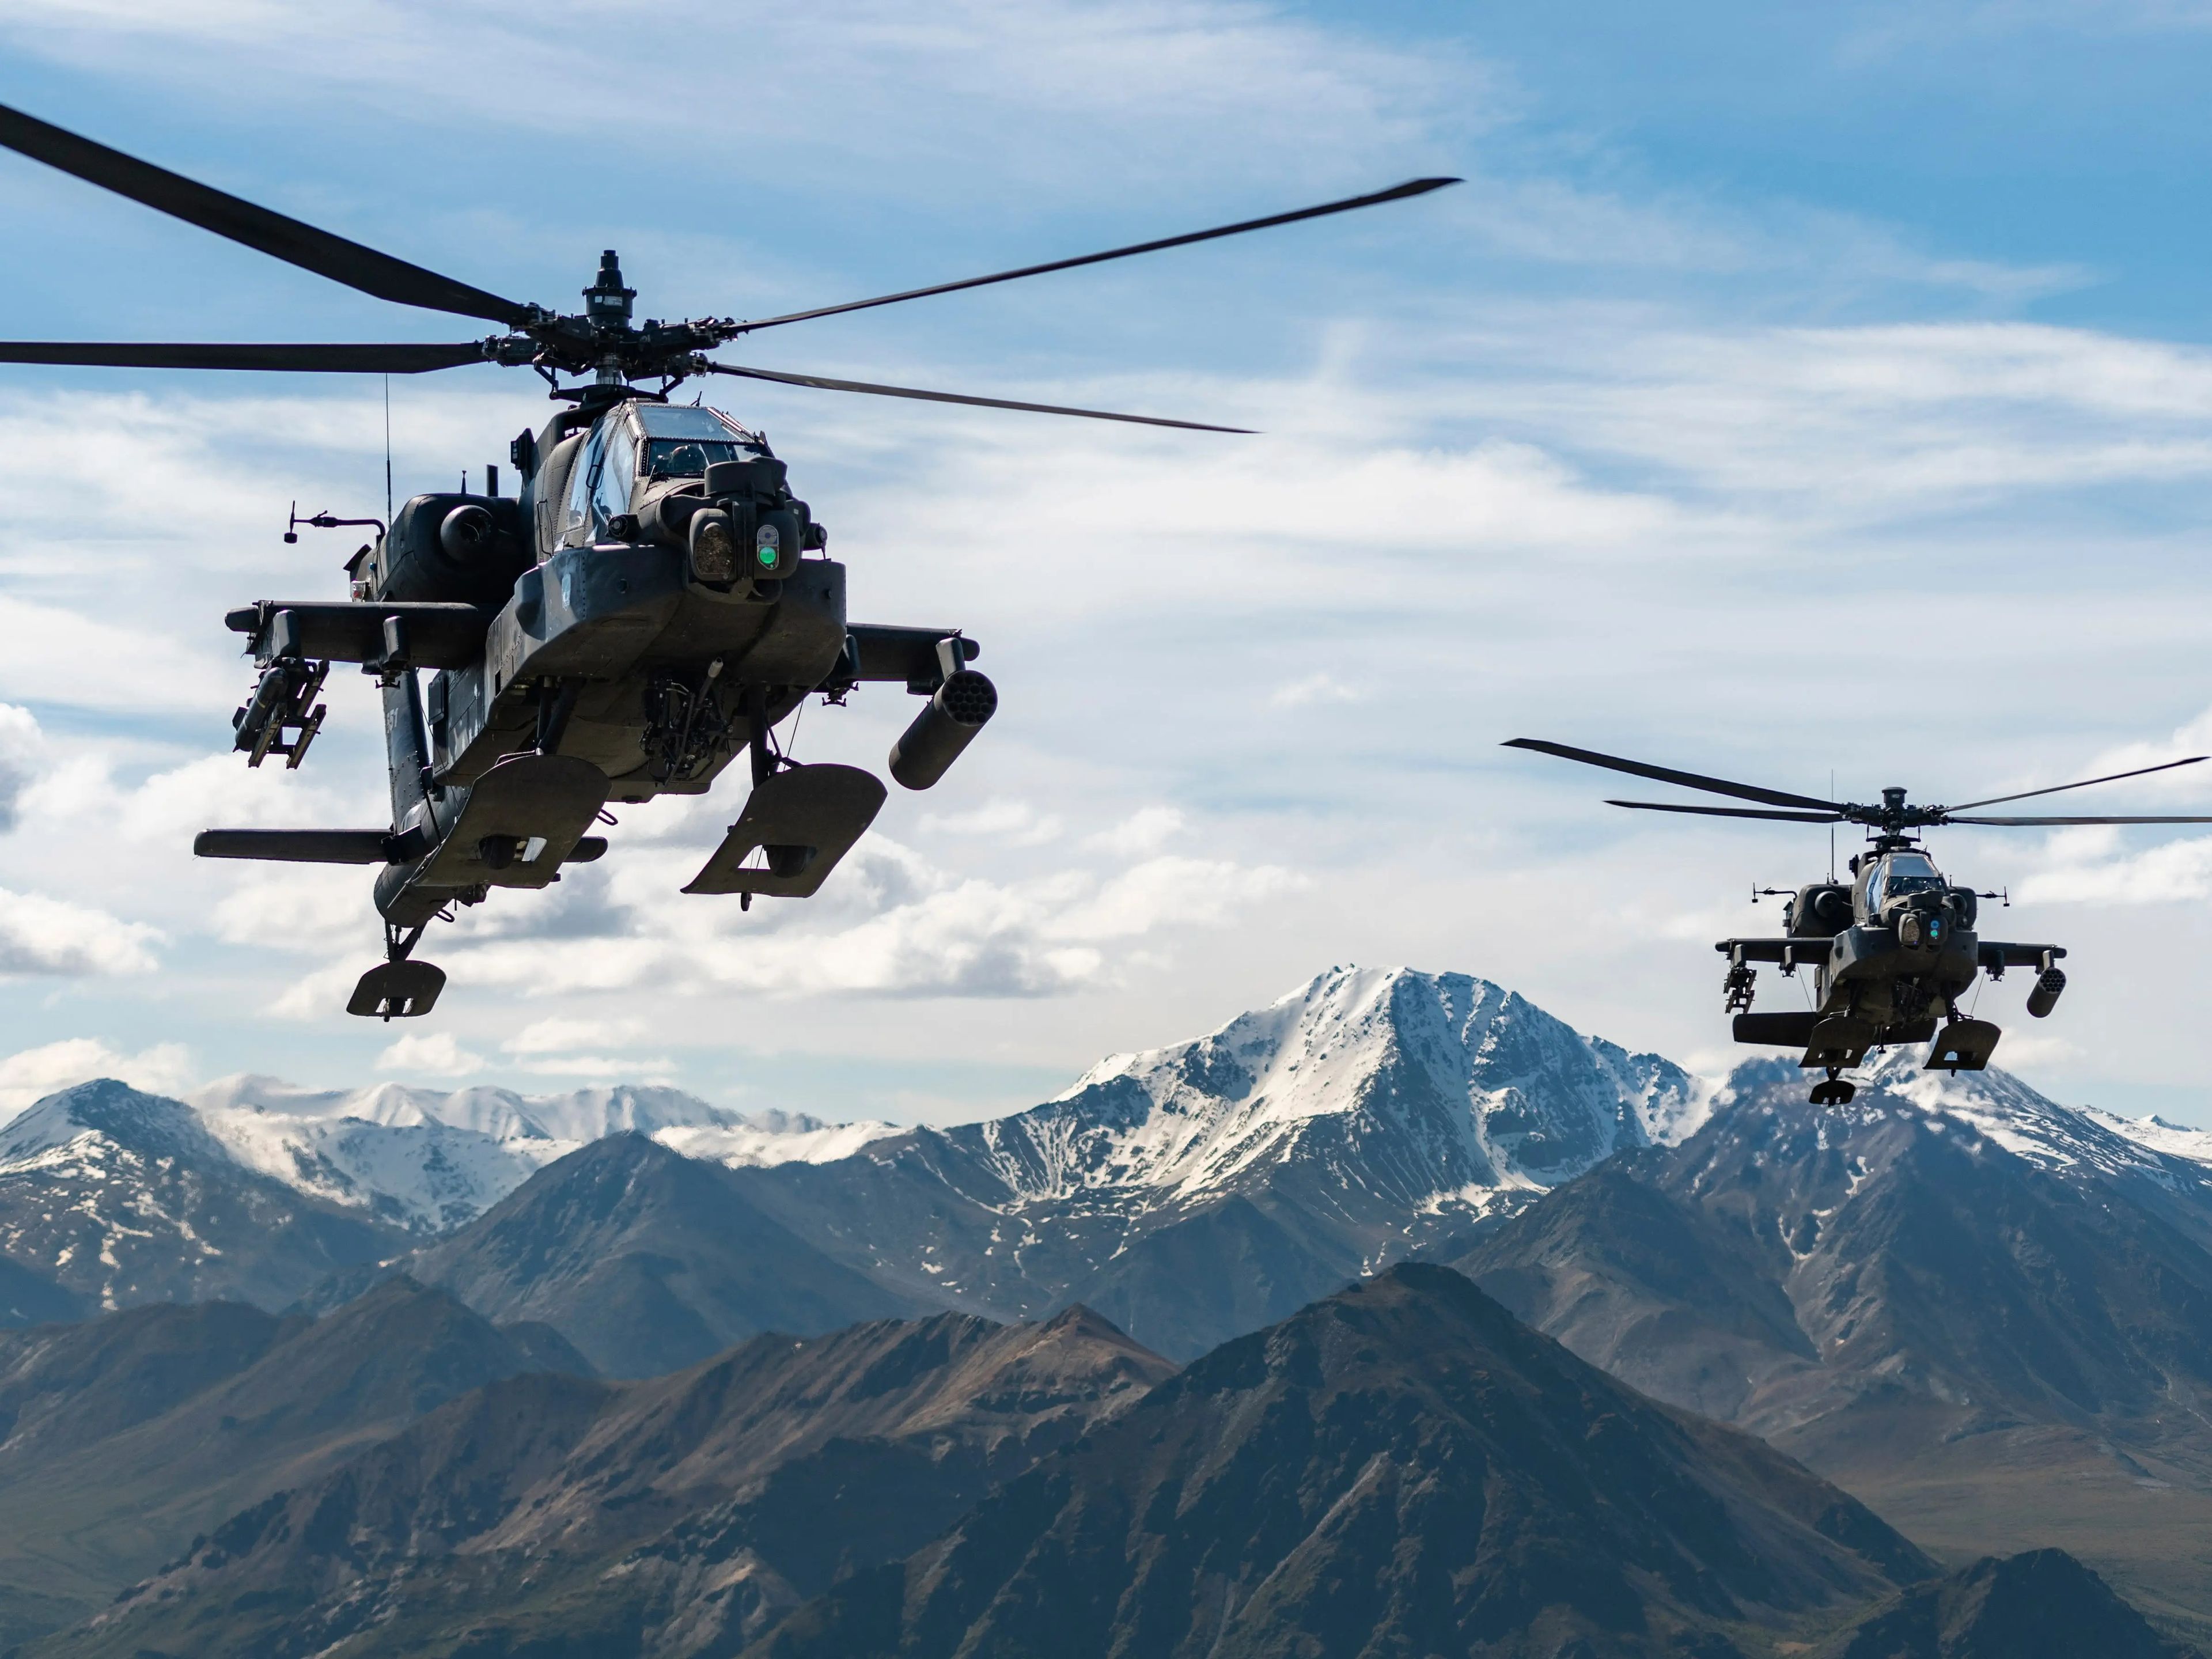 Helicópteros de ataque AH-64D Apache Longbow sobrevuelan una cadena montañosa cerca de Fort Wainwright, Alaska, el 3 de junio de 2019.